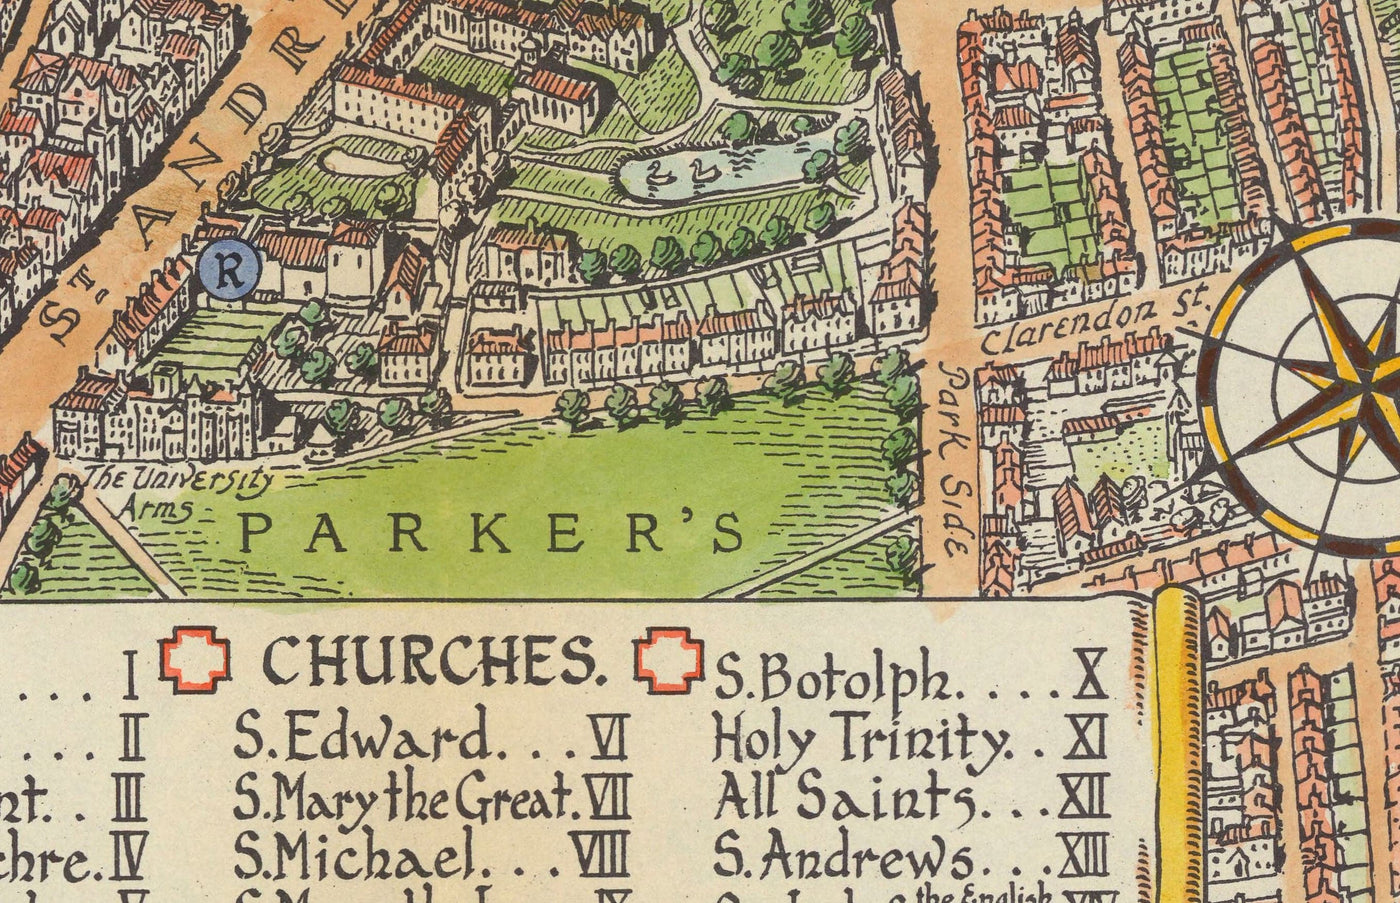 Ancienne carte de Cambridge, 1929 - Trinité, St John's, King's, Peterhouse, Jésus - Université et collèges